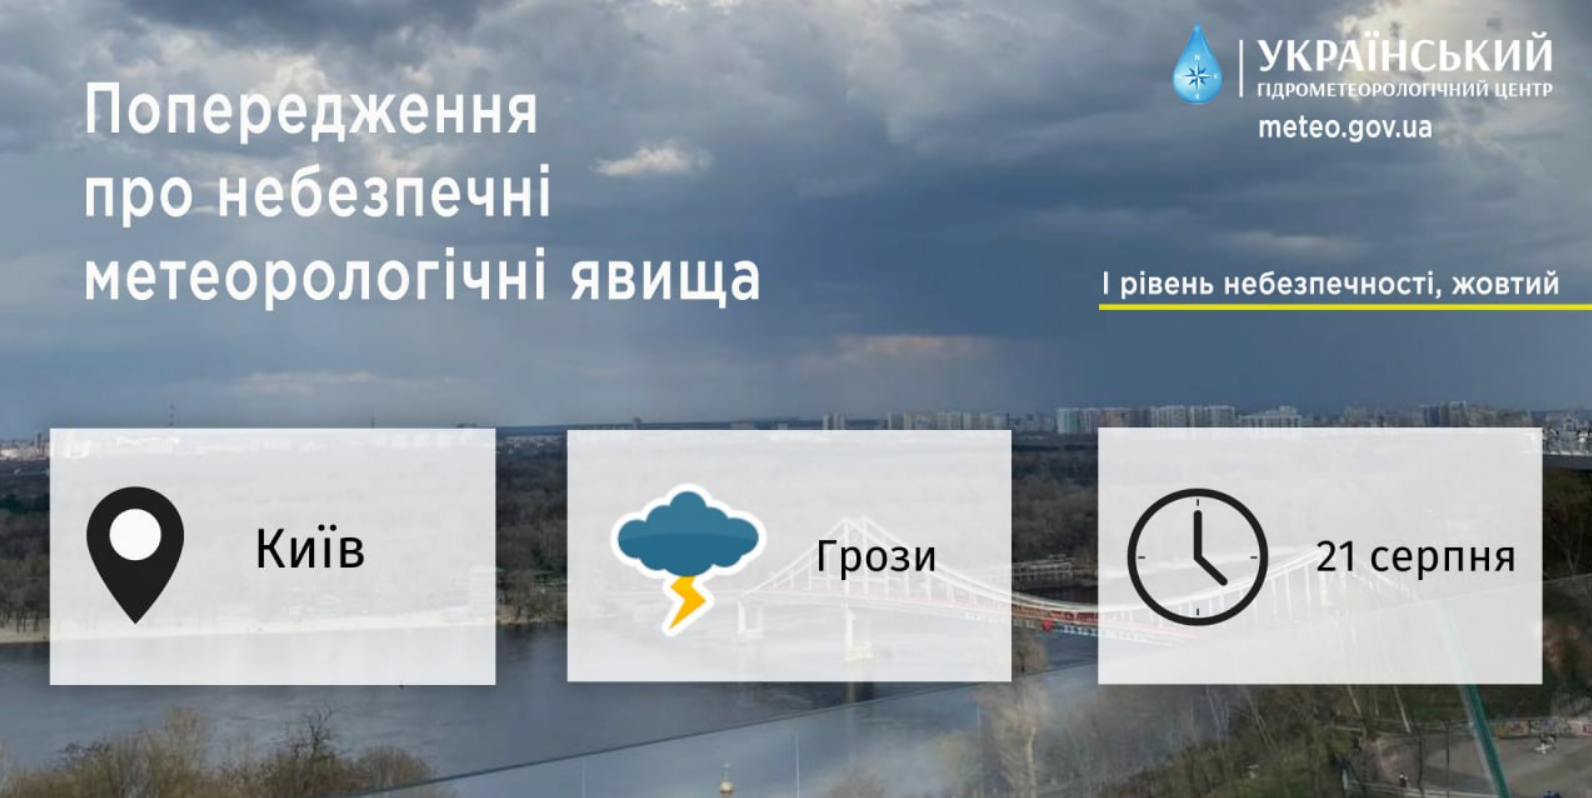 Сьогодні, 21 серпня, після тривалої спеки у Києві та на Київщині пройдуть дощі та грози